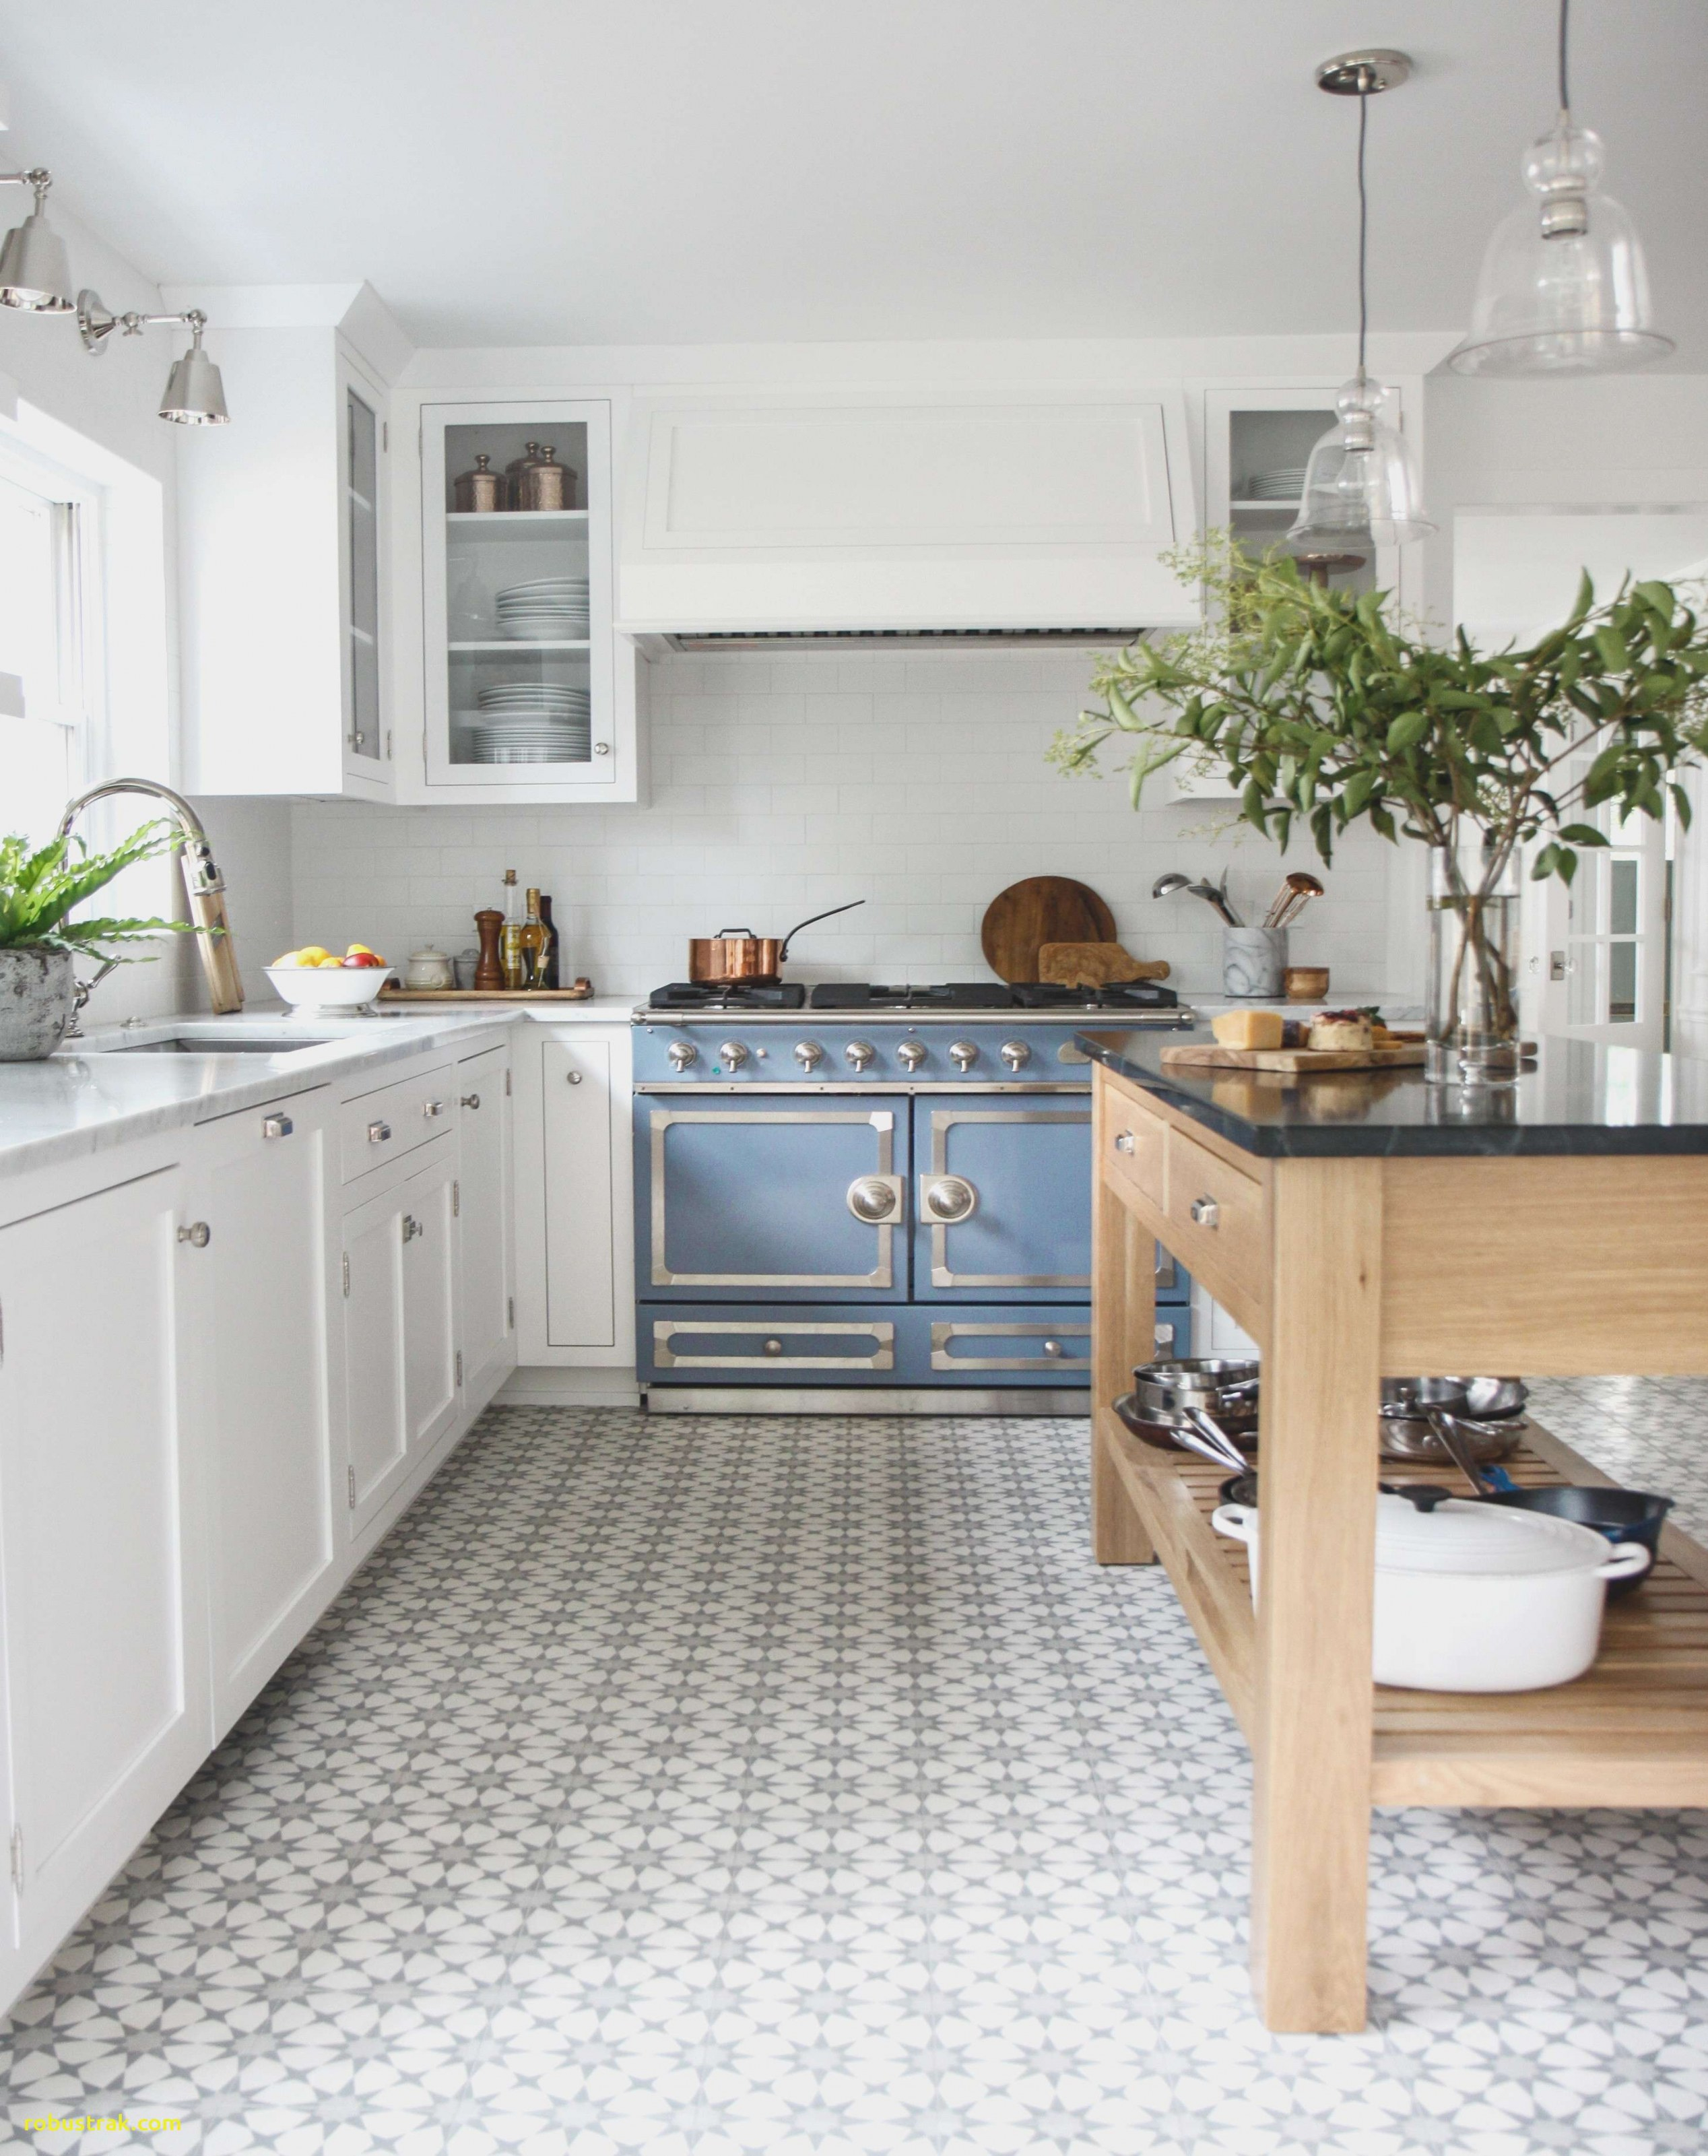 Kitchen Floor Tile Ideas Elegant Gray And White Kitchen regarding size 2536 X 3201